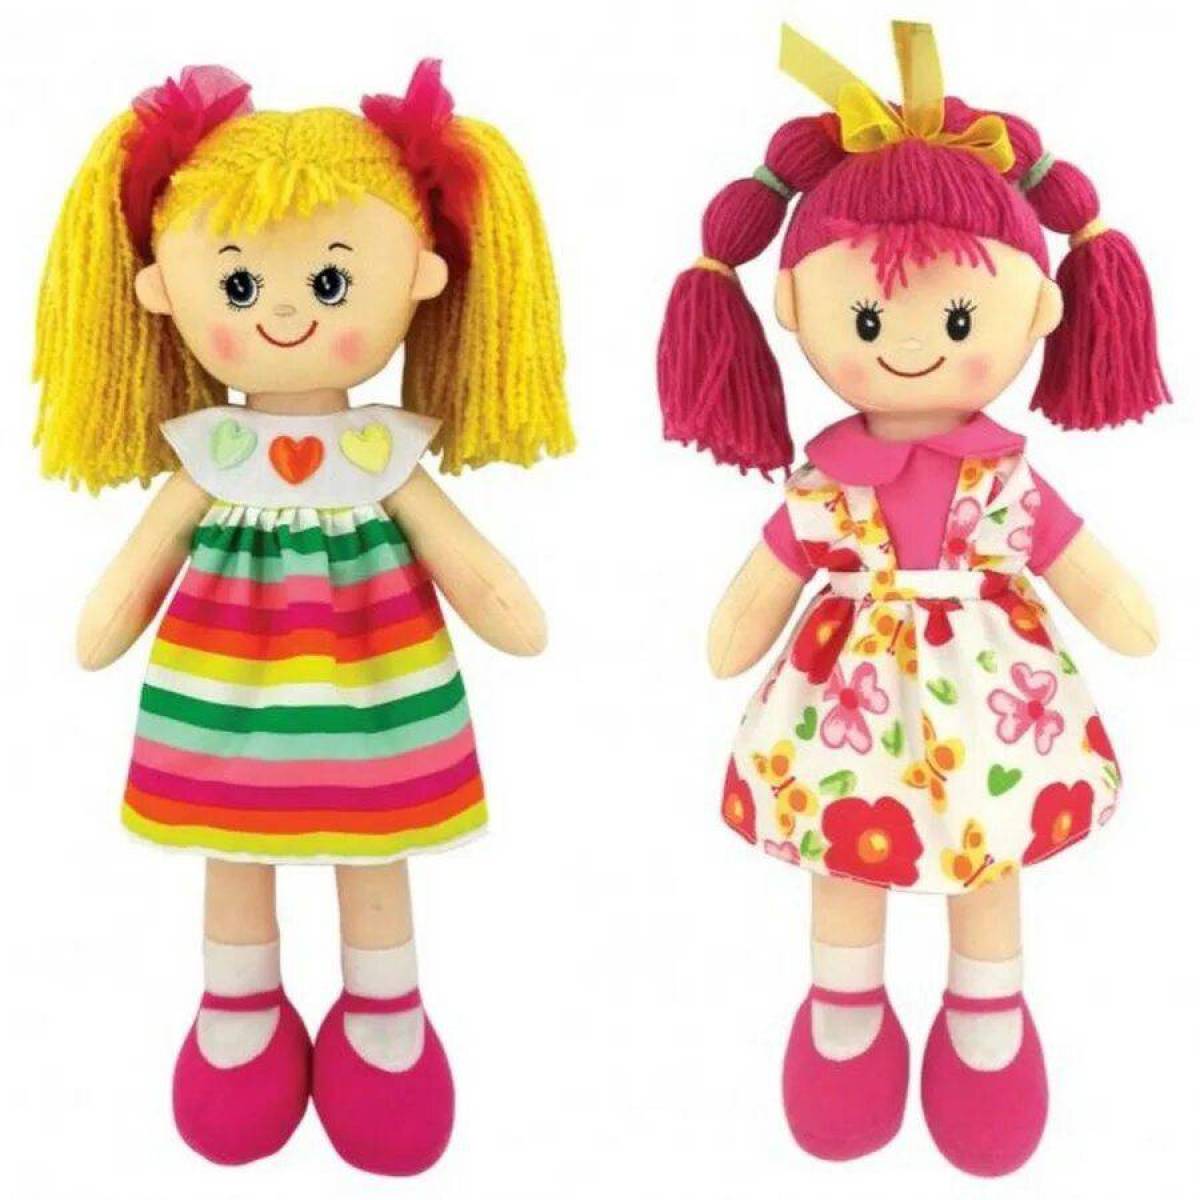 Doll картинка. Игрушки и куклы. Куклы для детей. Куклы для девочек. Игрушки для девочек куклы.